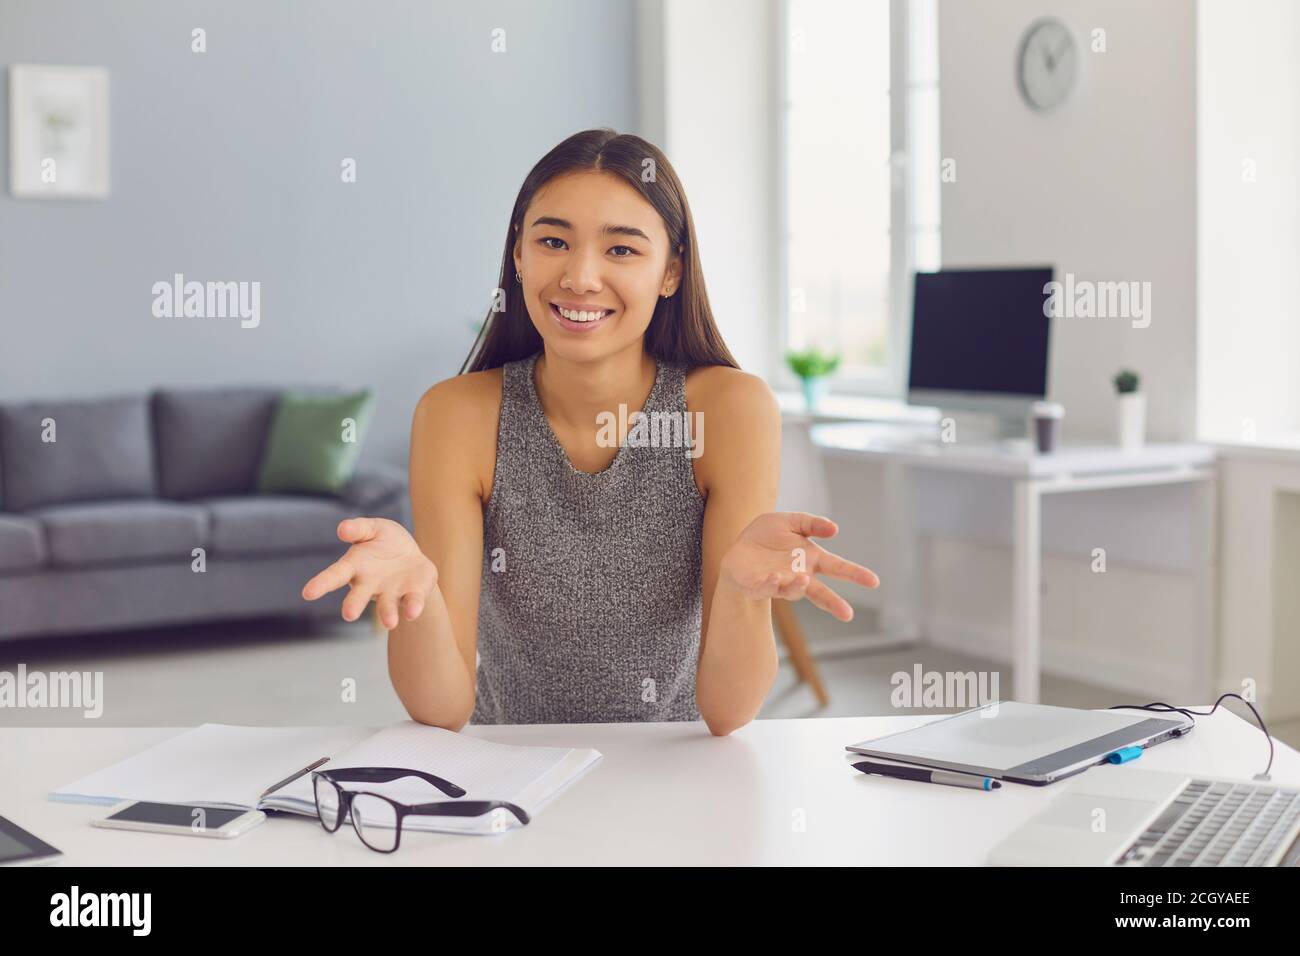 Lächelnd moderne weibliche Lebenscoach oder vlogger Erfahrung in teilen Online-Video-Meeting Stockfoto